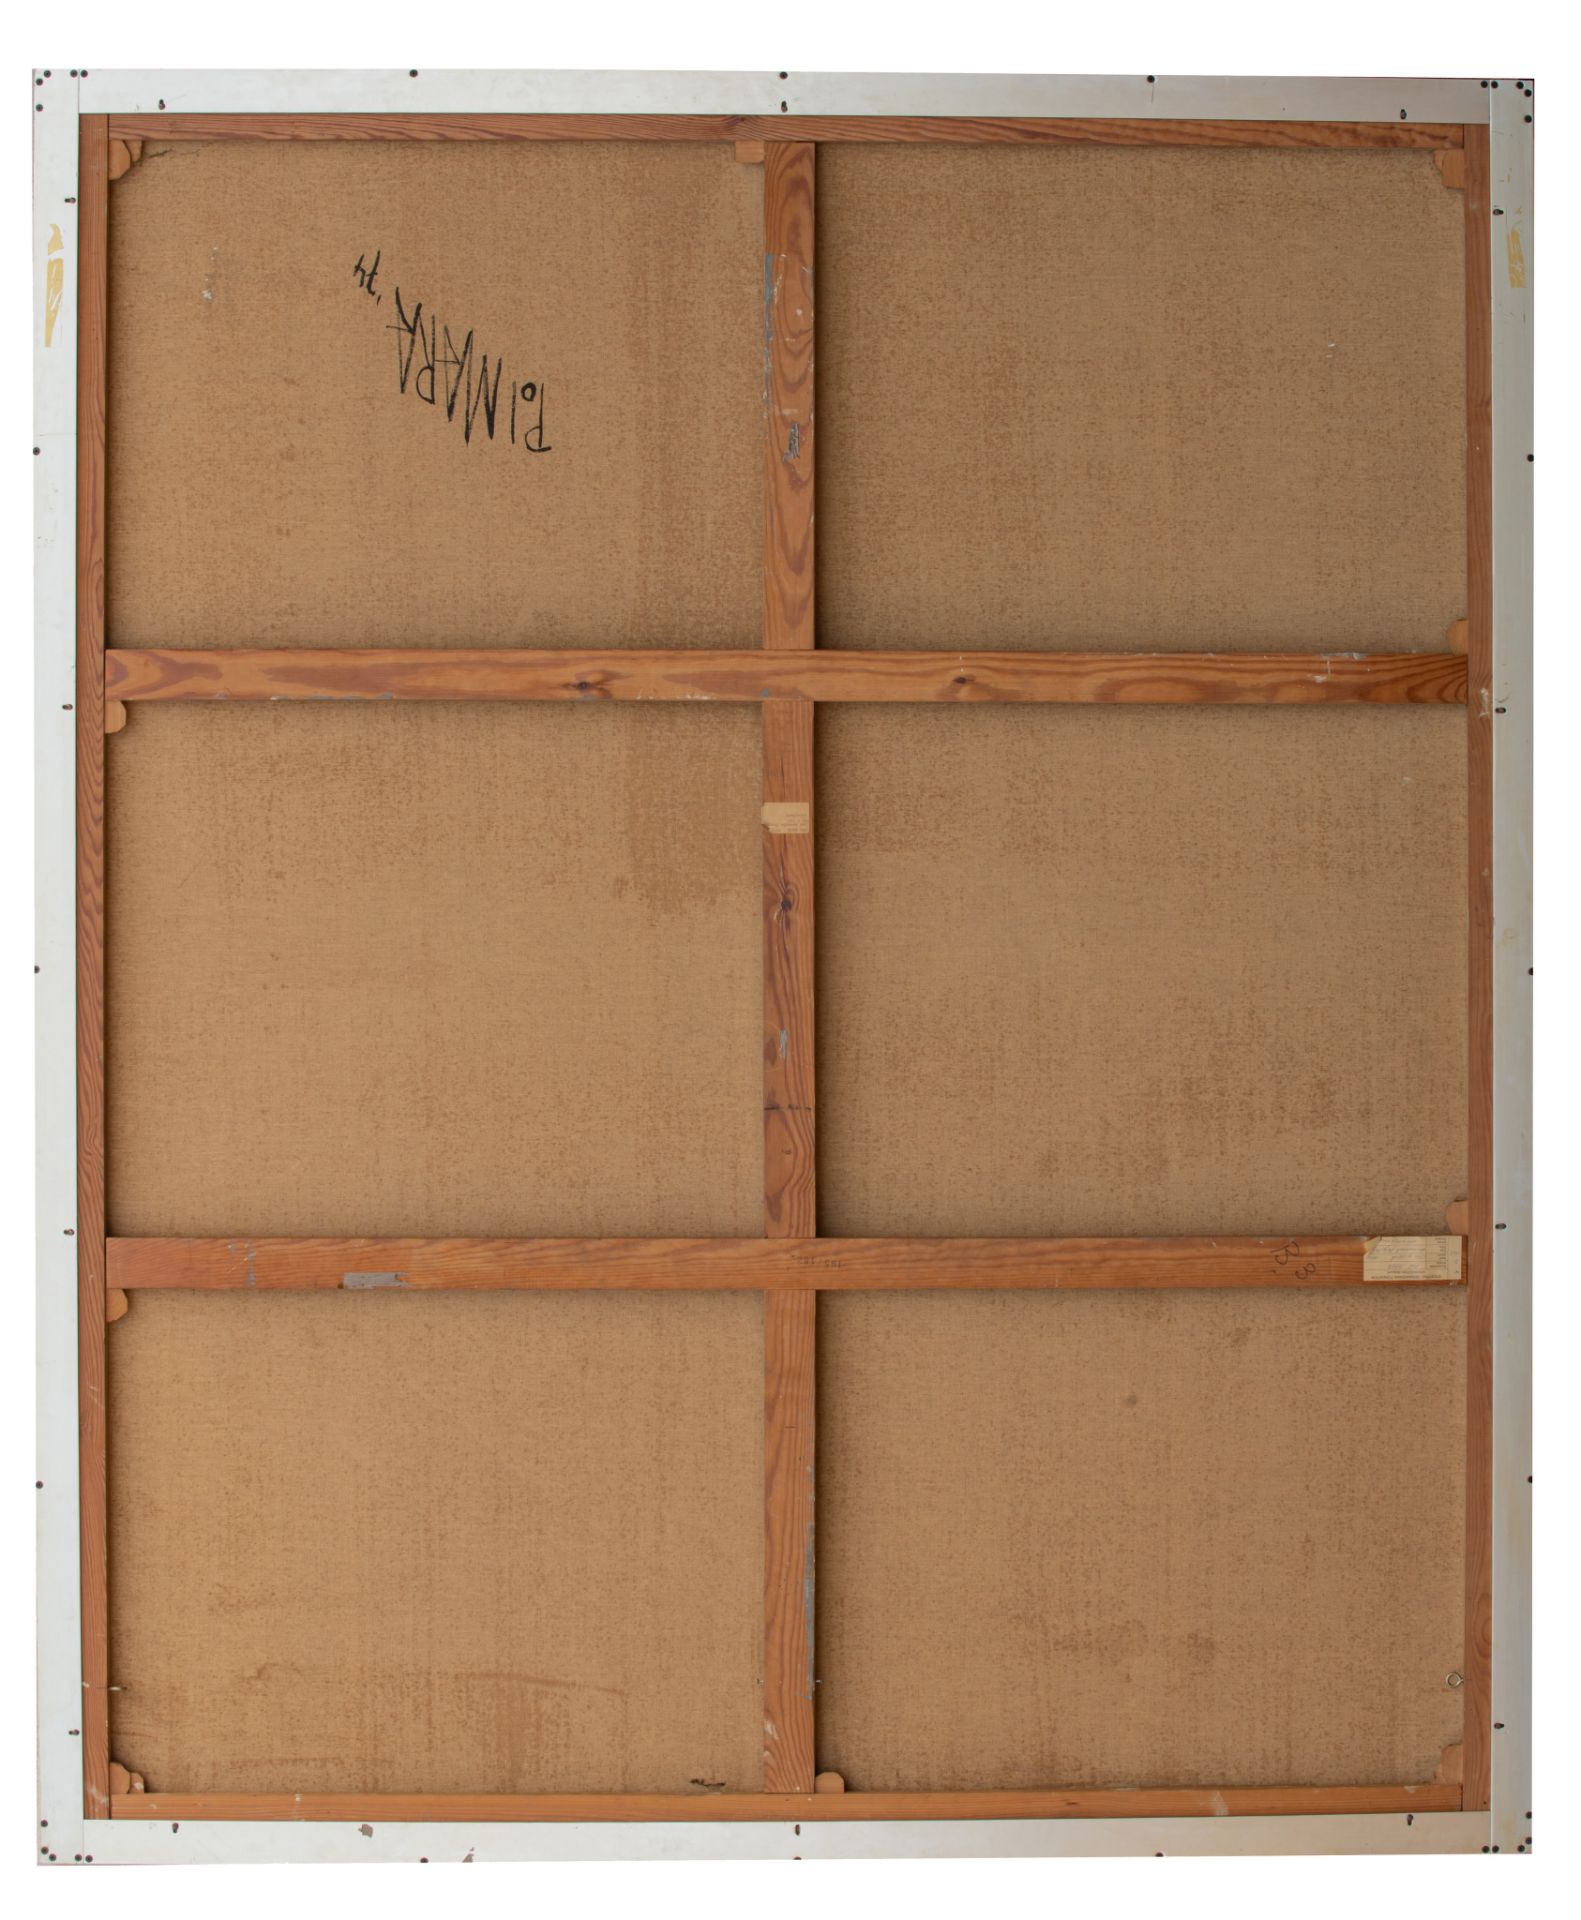 Pol Mara (1920-1998), 'The Fragile Moments', 1974, oil on canvas, 162 x 195 cm - Bild 3 aus 5